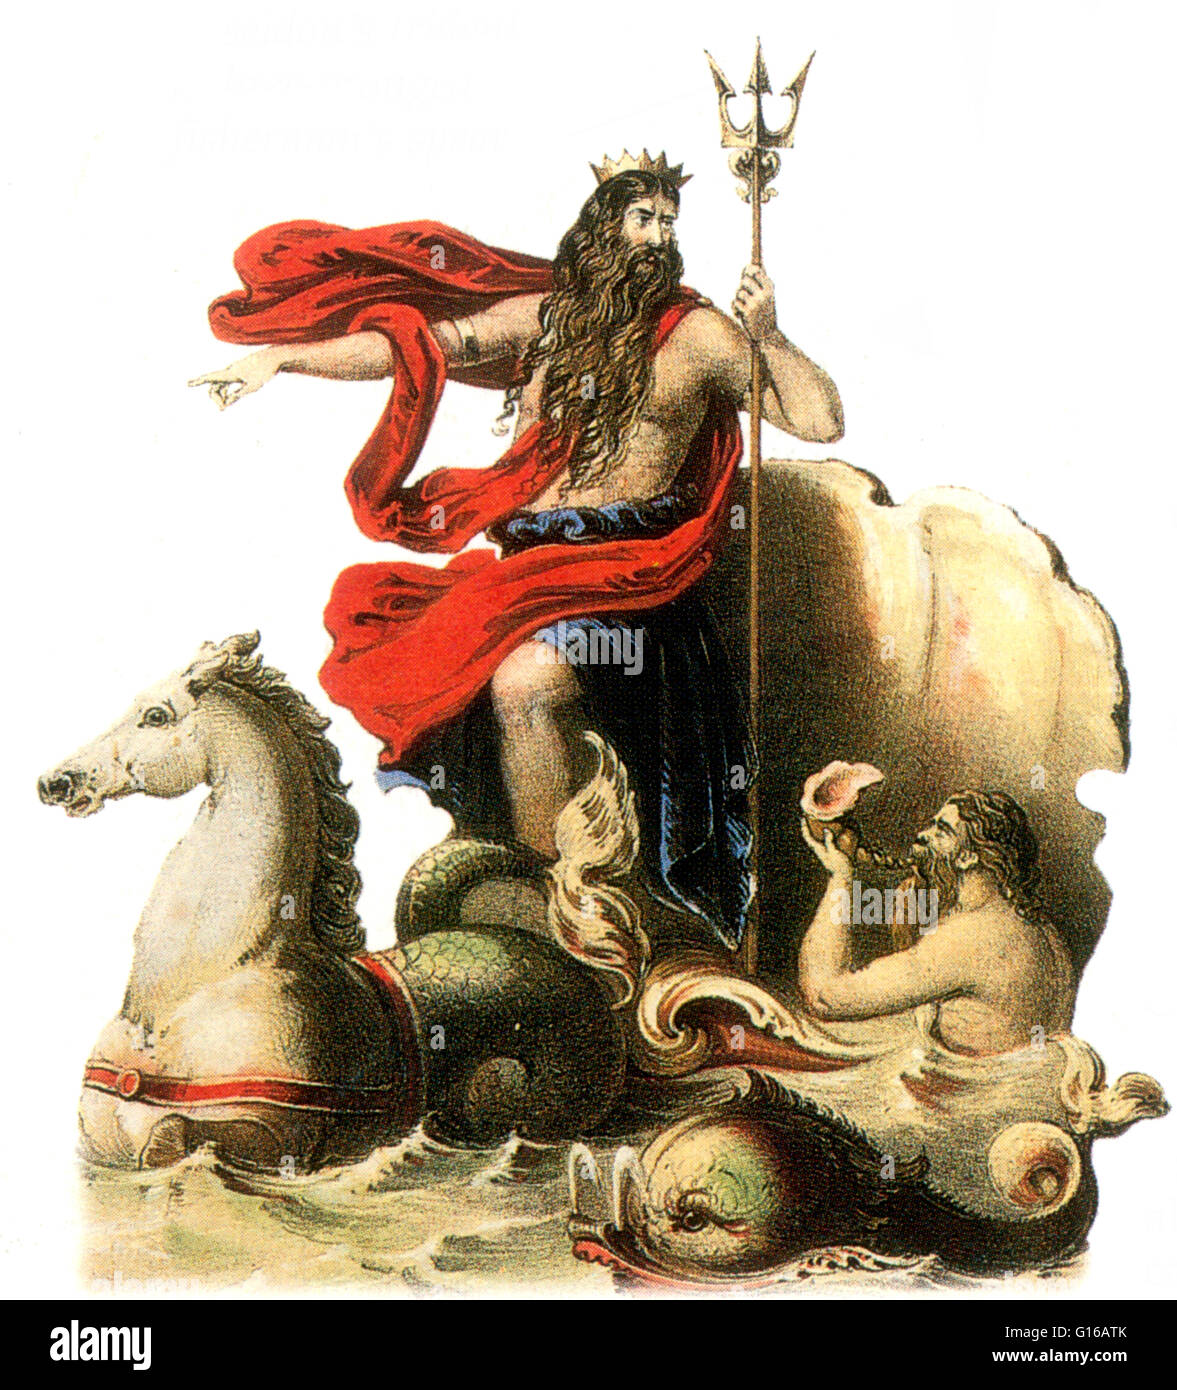 Poseidon ist eine der zwölf olympischen Gottheiten des Pantheons in der griechischen Mythologie. Seine Haupt-Domain ist der Ozean, und er ist den Gott des Meeres genannt. Darüber hinaus nennt man Erde-Shaker wegen seiner Rolle bei der Entstehung von Erdbeben und Ruf Stockfoto